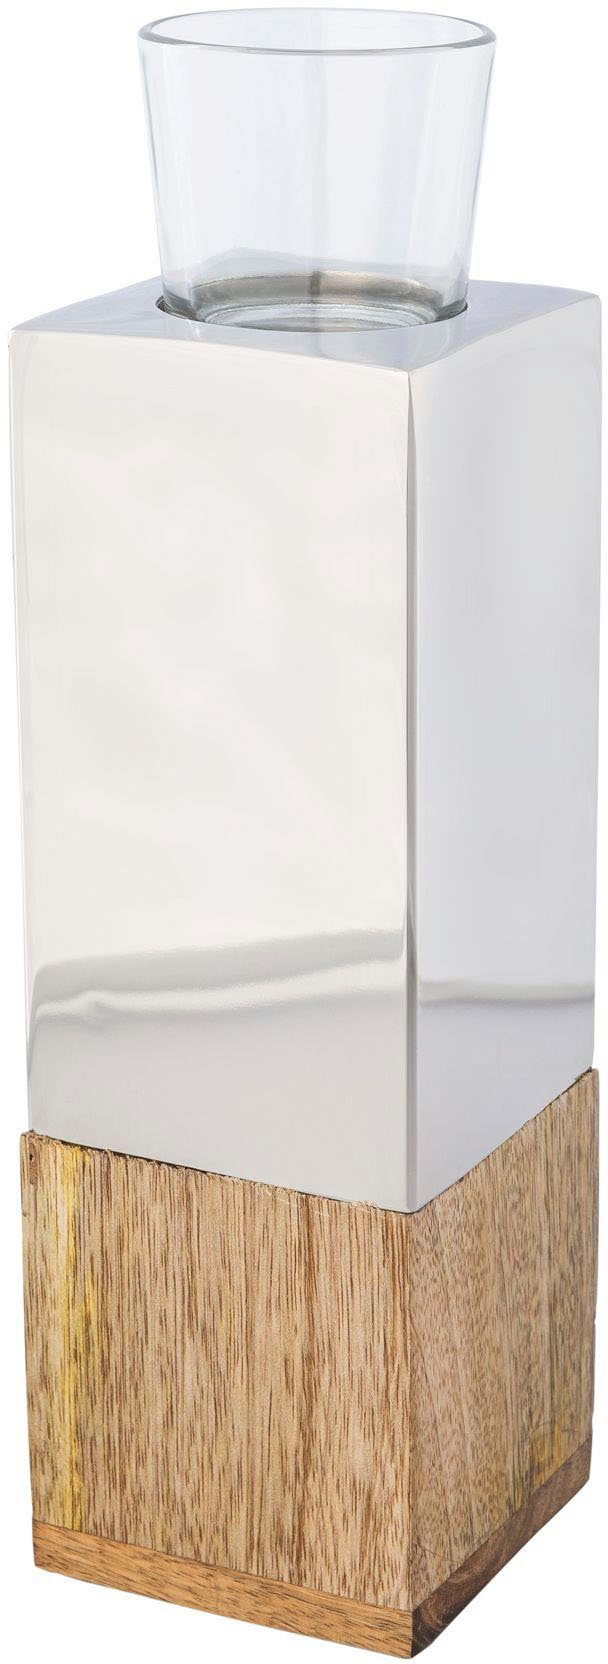 Creativ home Teelichthalter Kerzenhalter Tower (1 St), aus Holz, Edelstahl und Glas | Teelichthalter